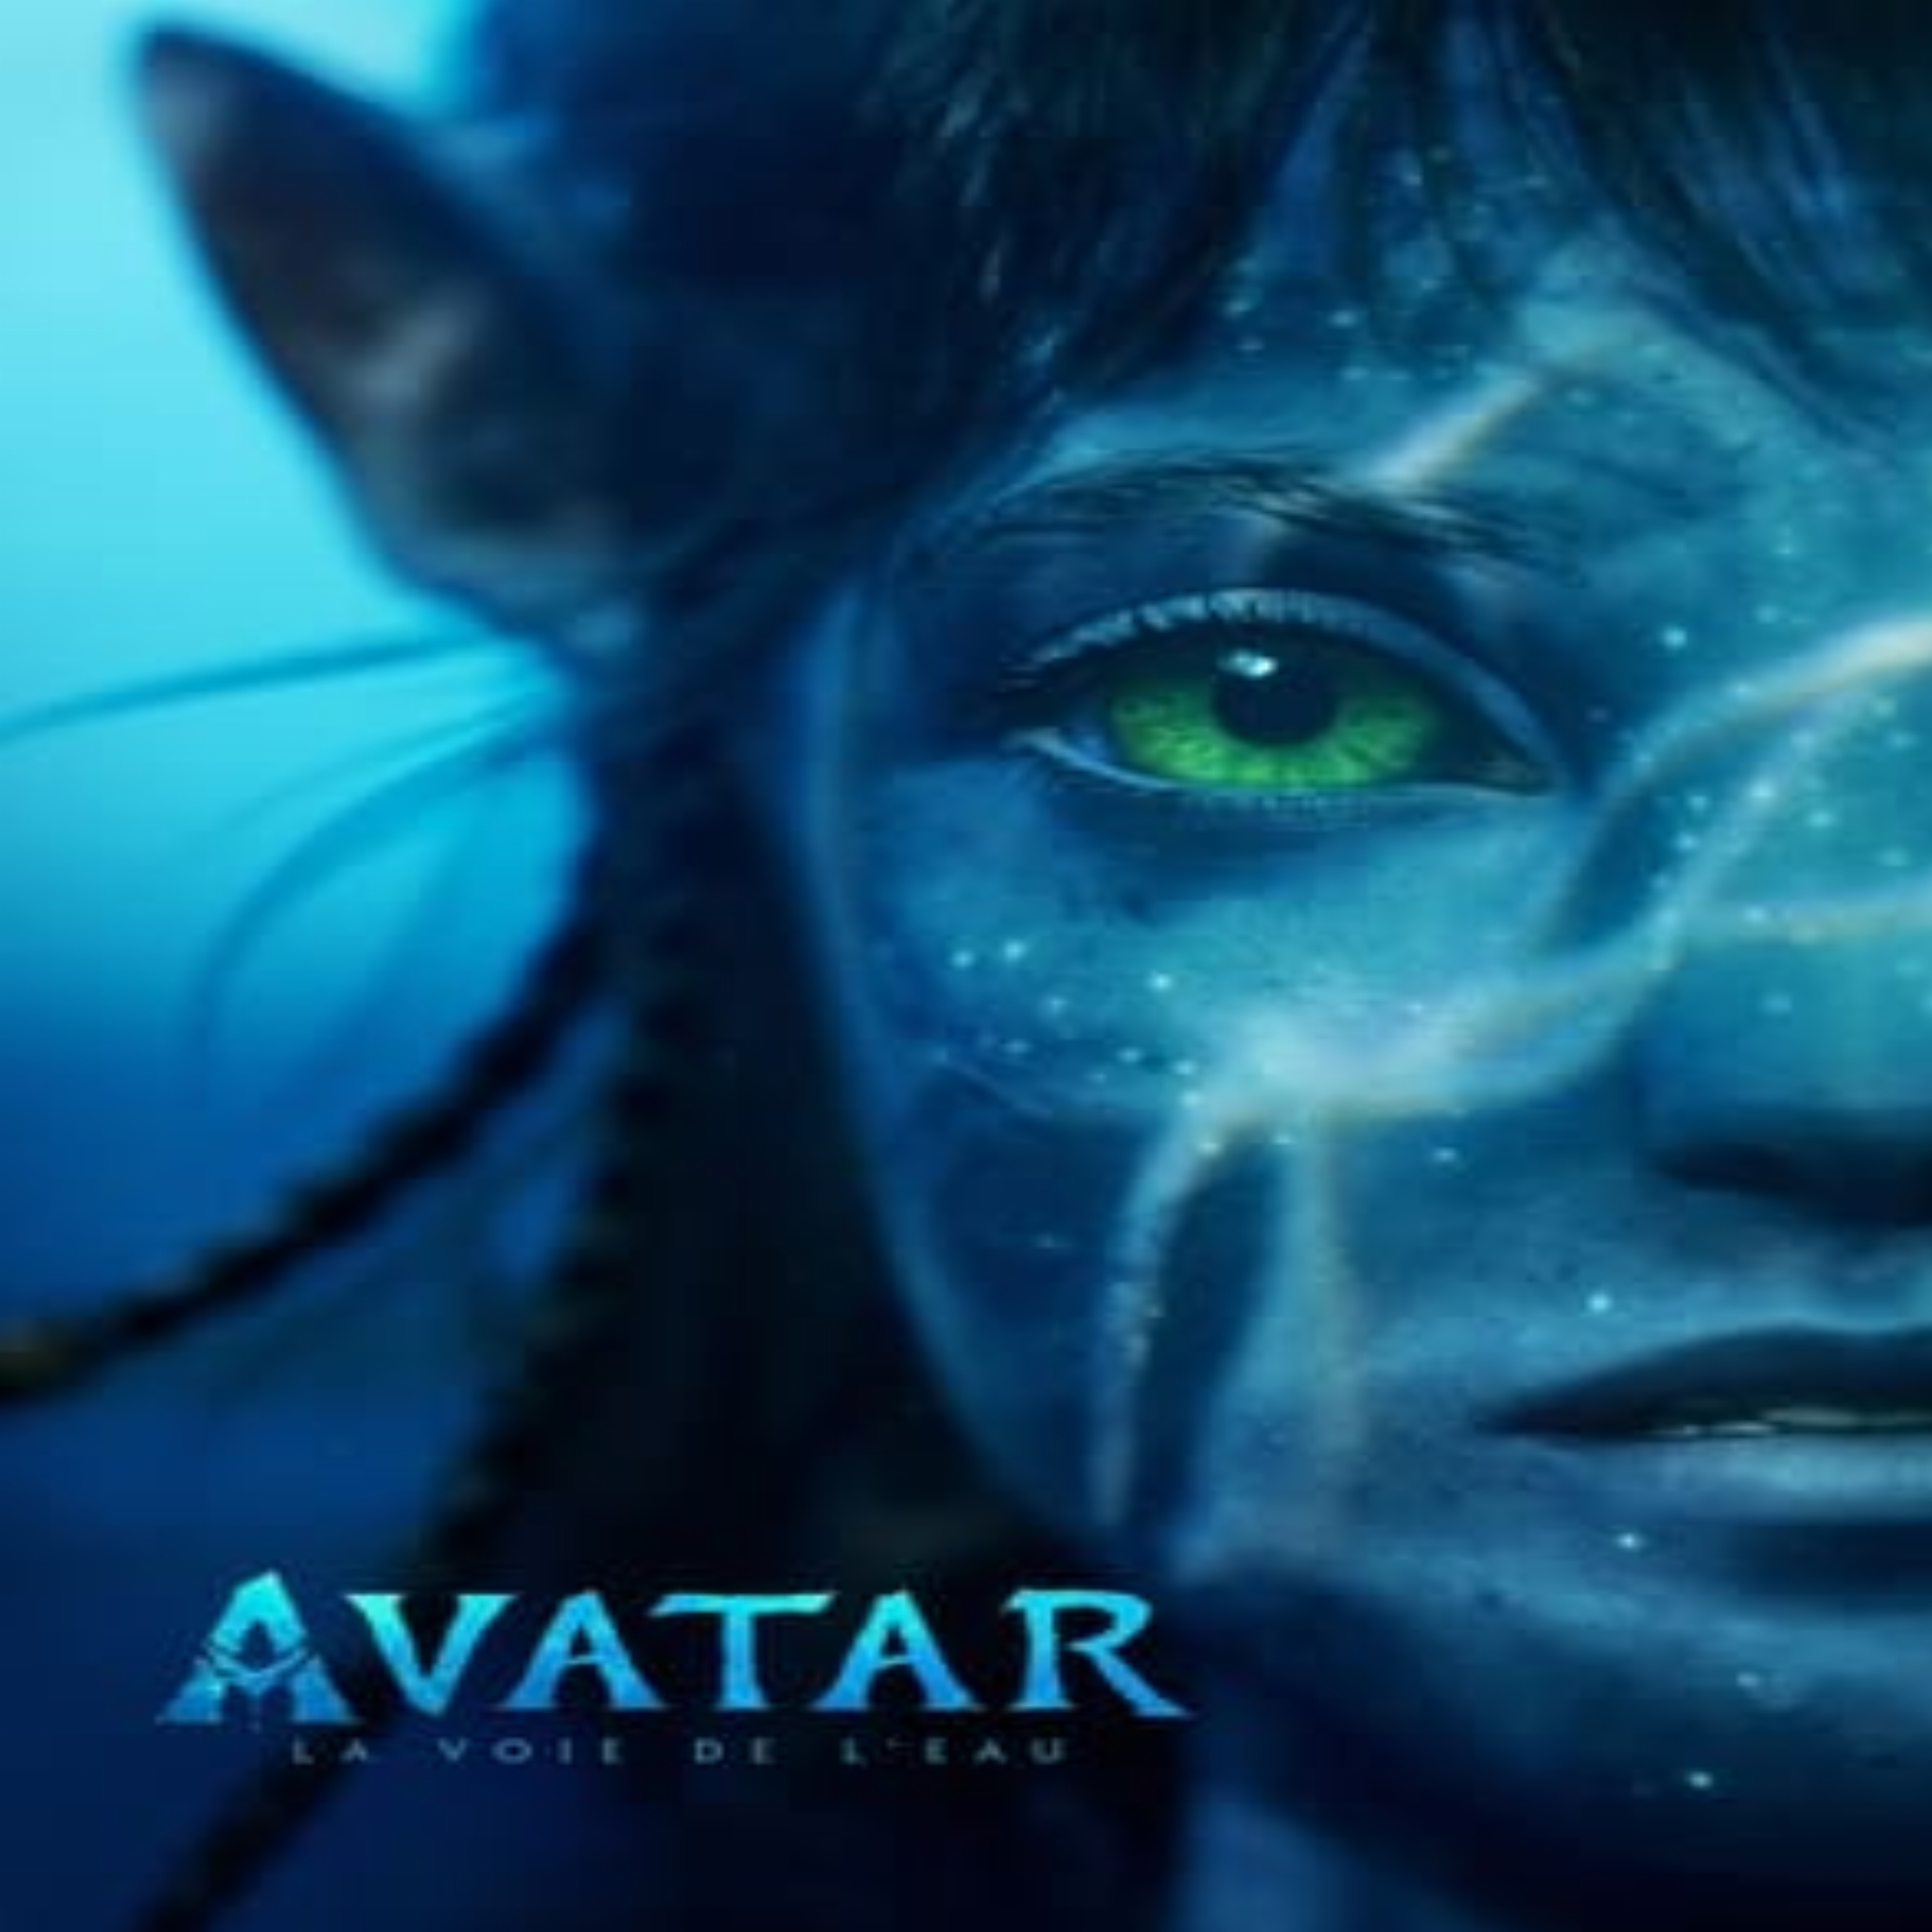 Avatar 2 La Voie de l'eau film complet.jpg